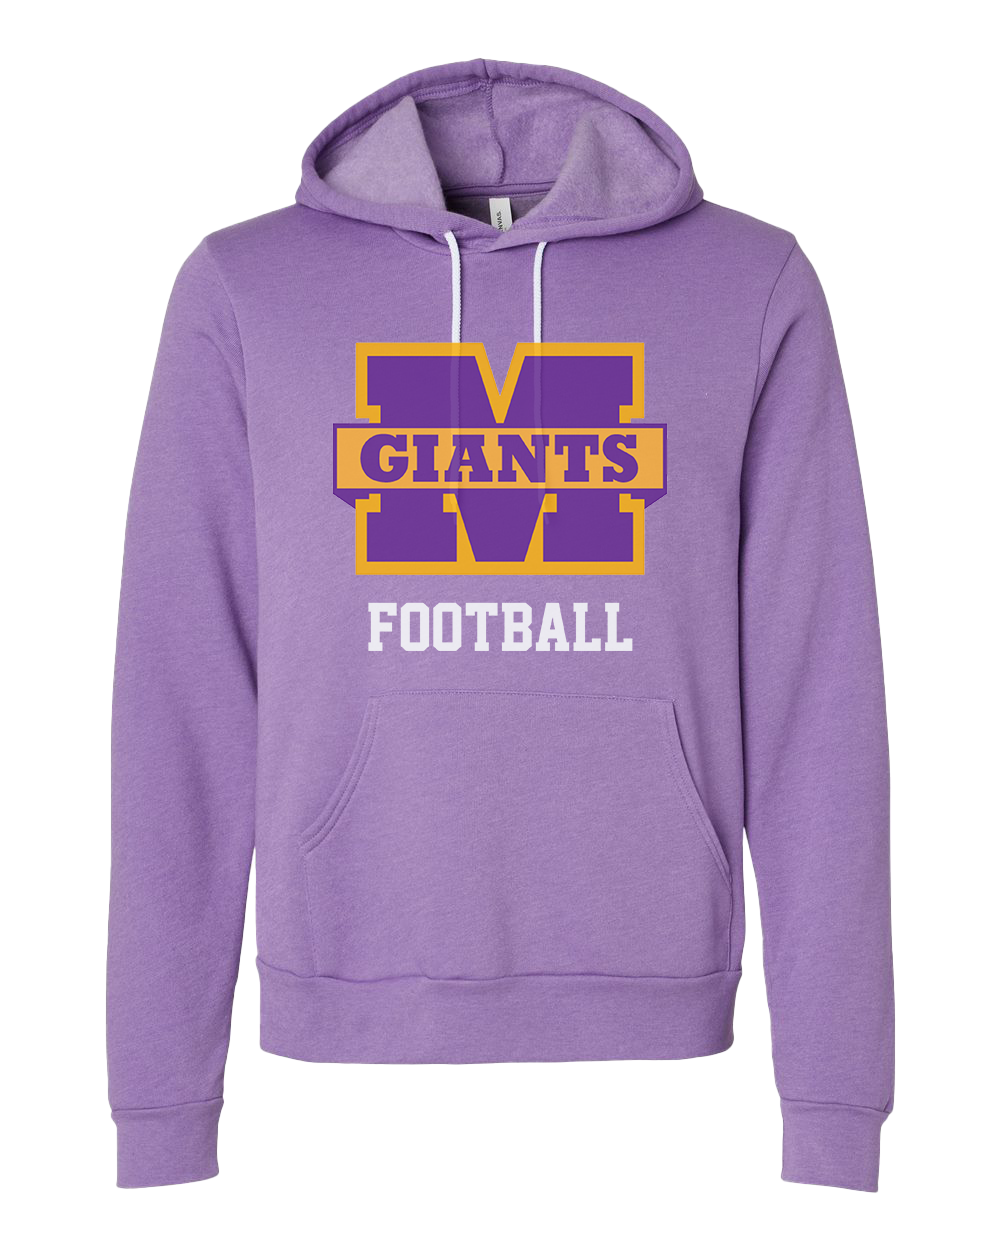 Marion Giants Football Hooded Sweatshirt - Heather Purple